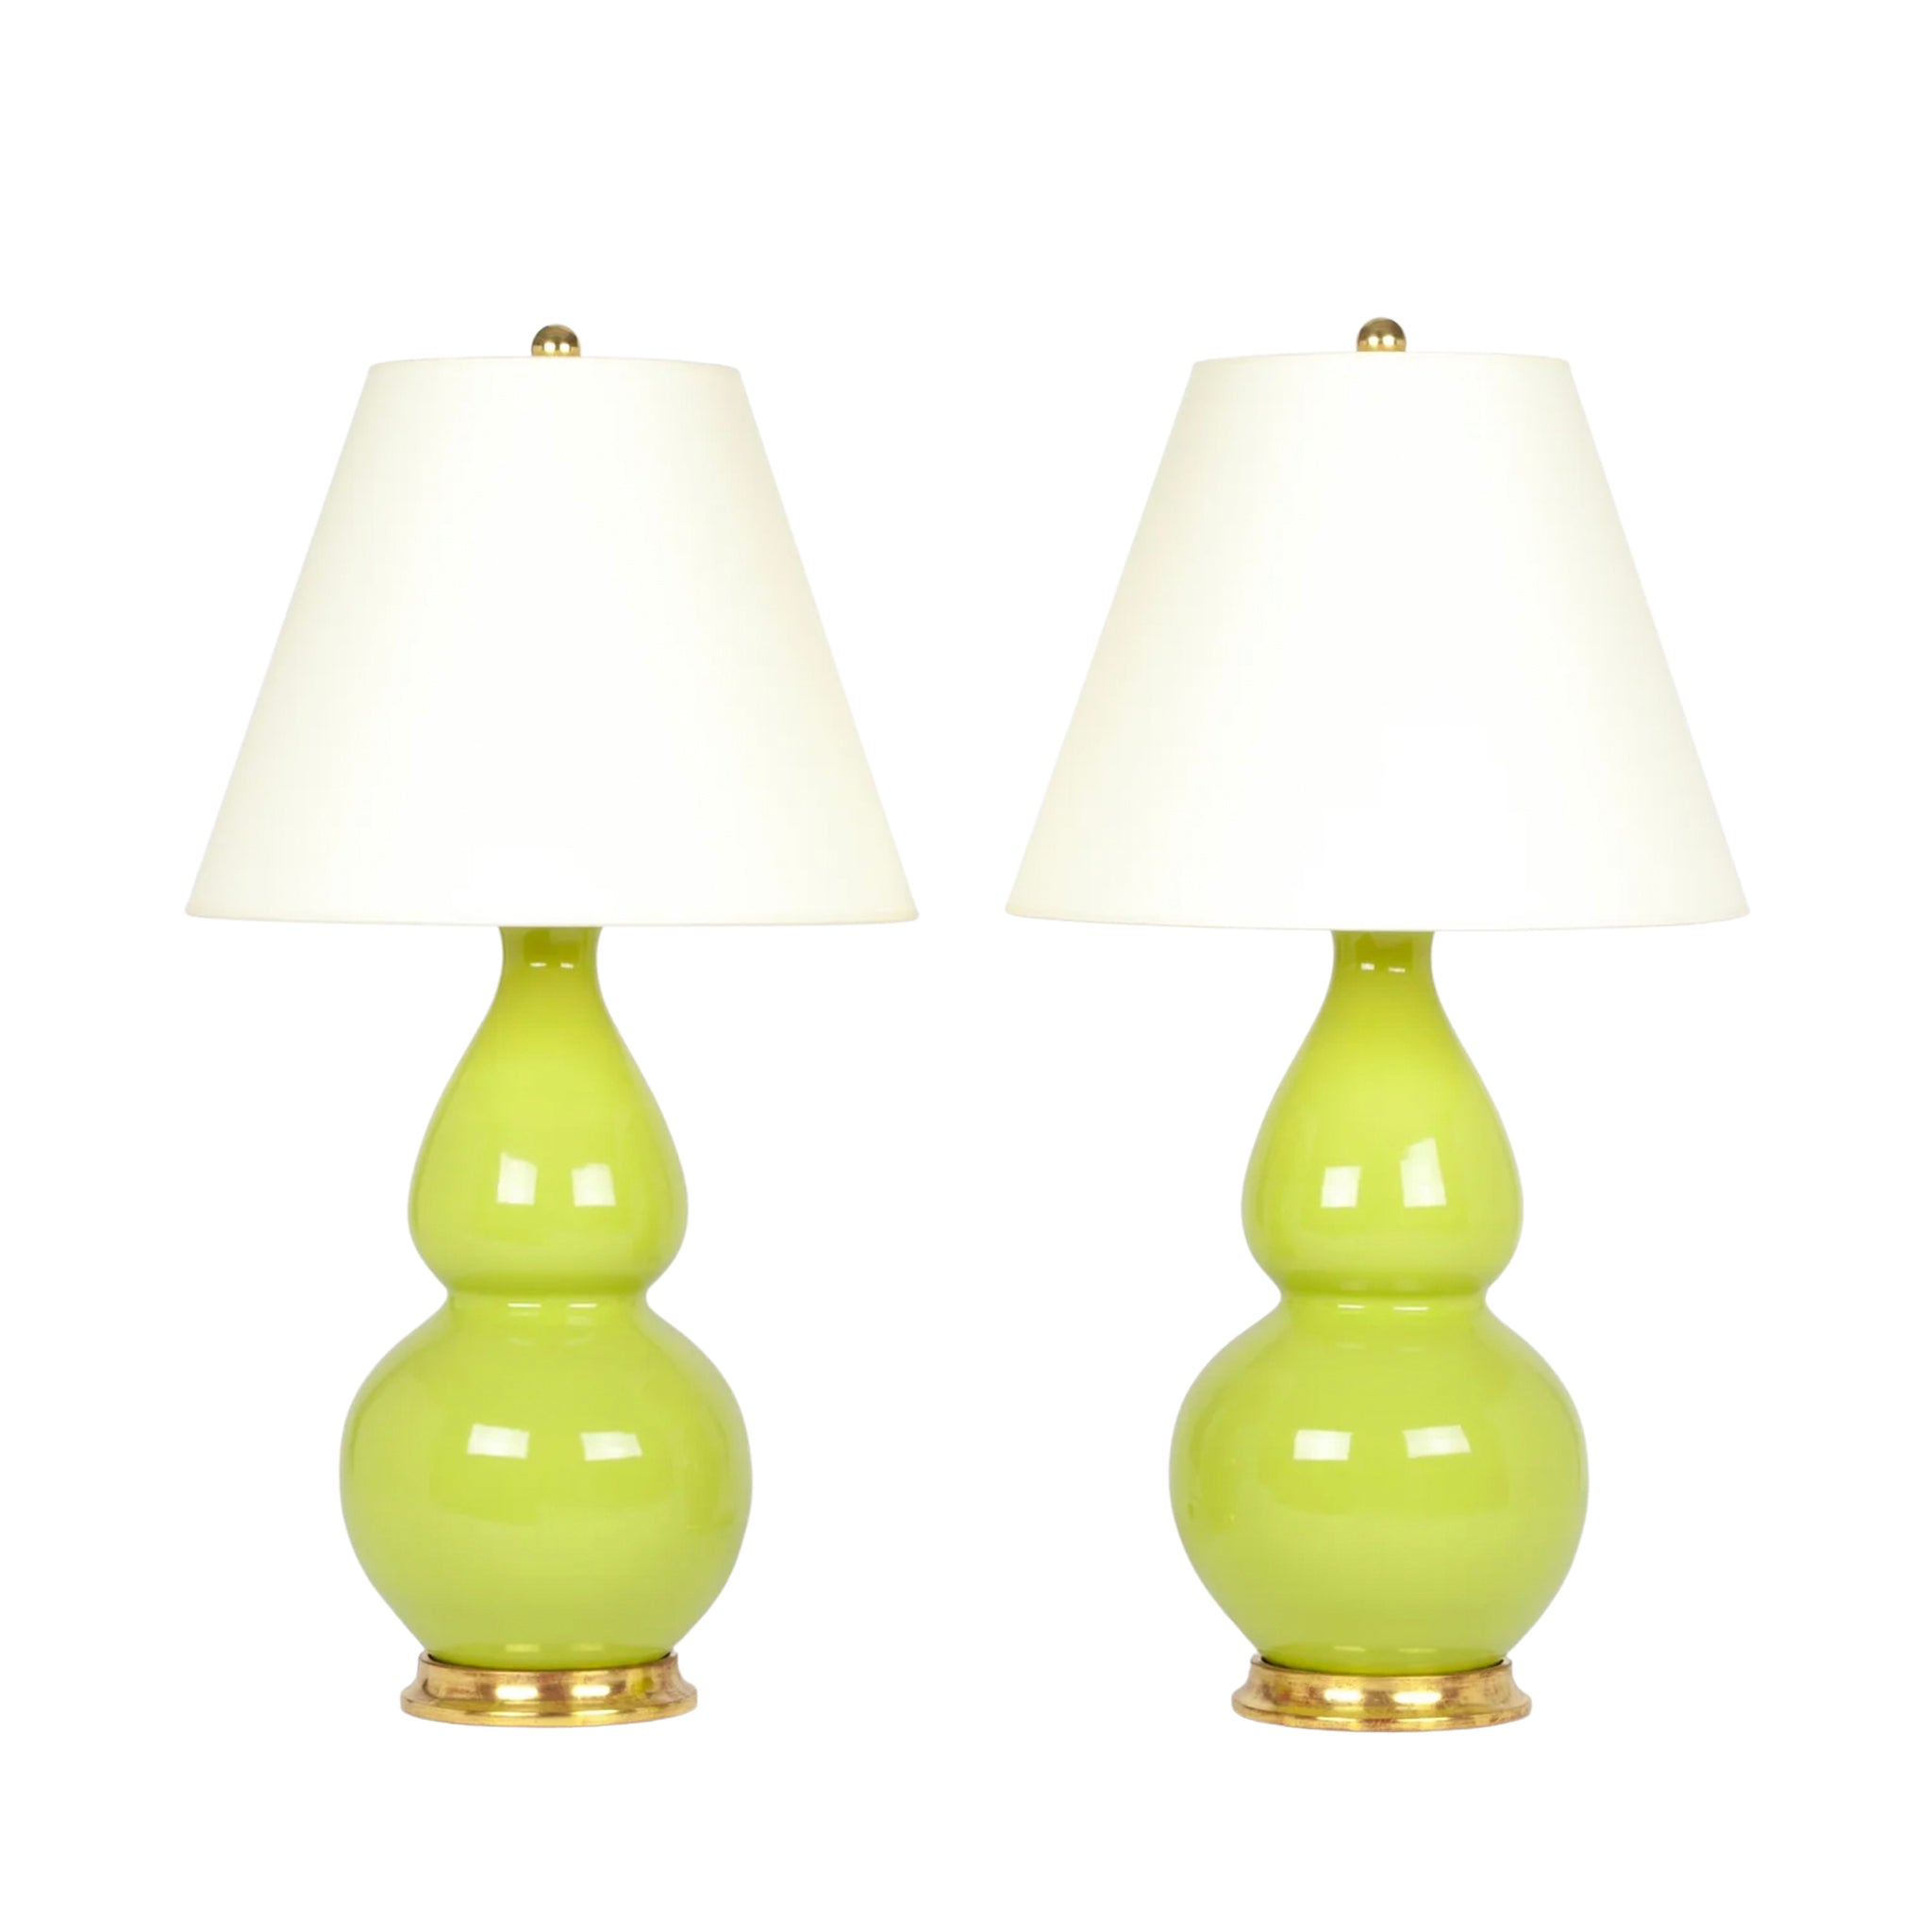 Pair of Medium Aurora Lamps in Apple Green